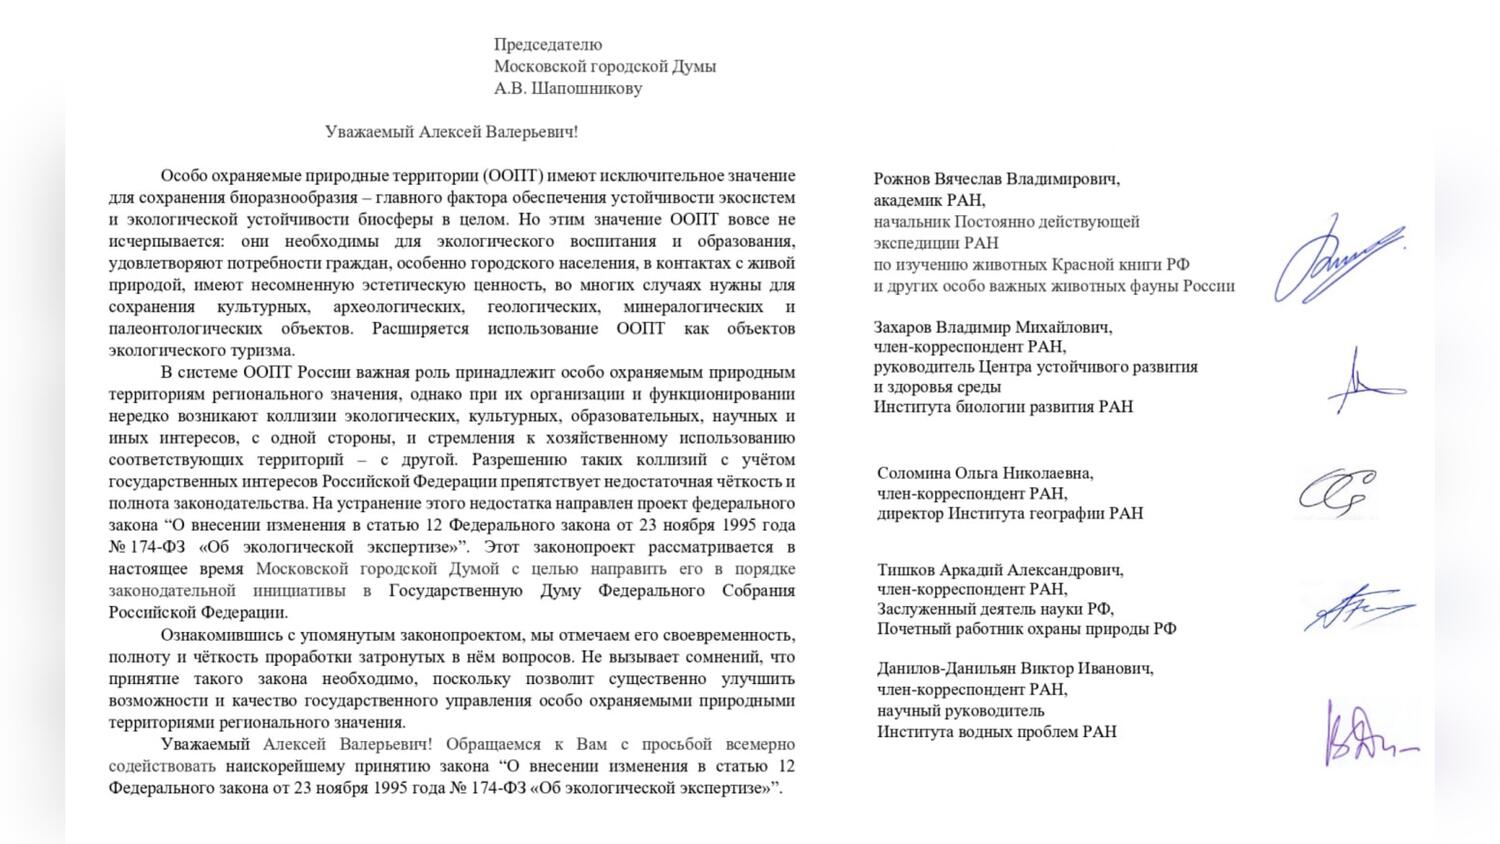 Академики РАН просят Мосгордуму поддержать законопроект Сергея Митрохина об экологической экспертизе для региональных ООПТ | Партия ЯБЛОКО